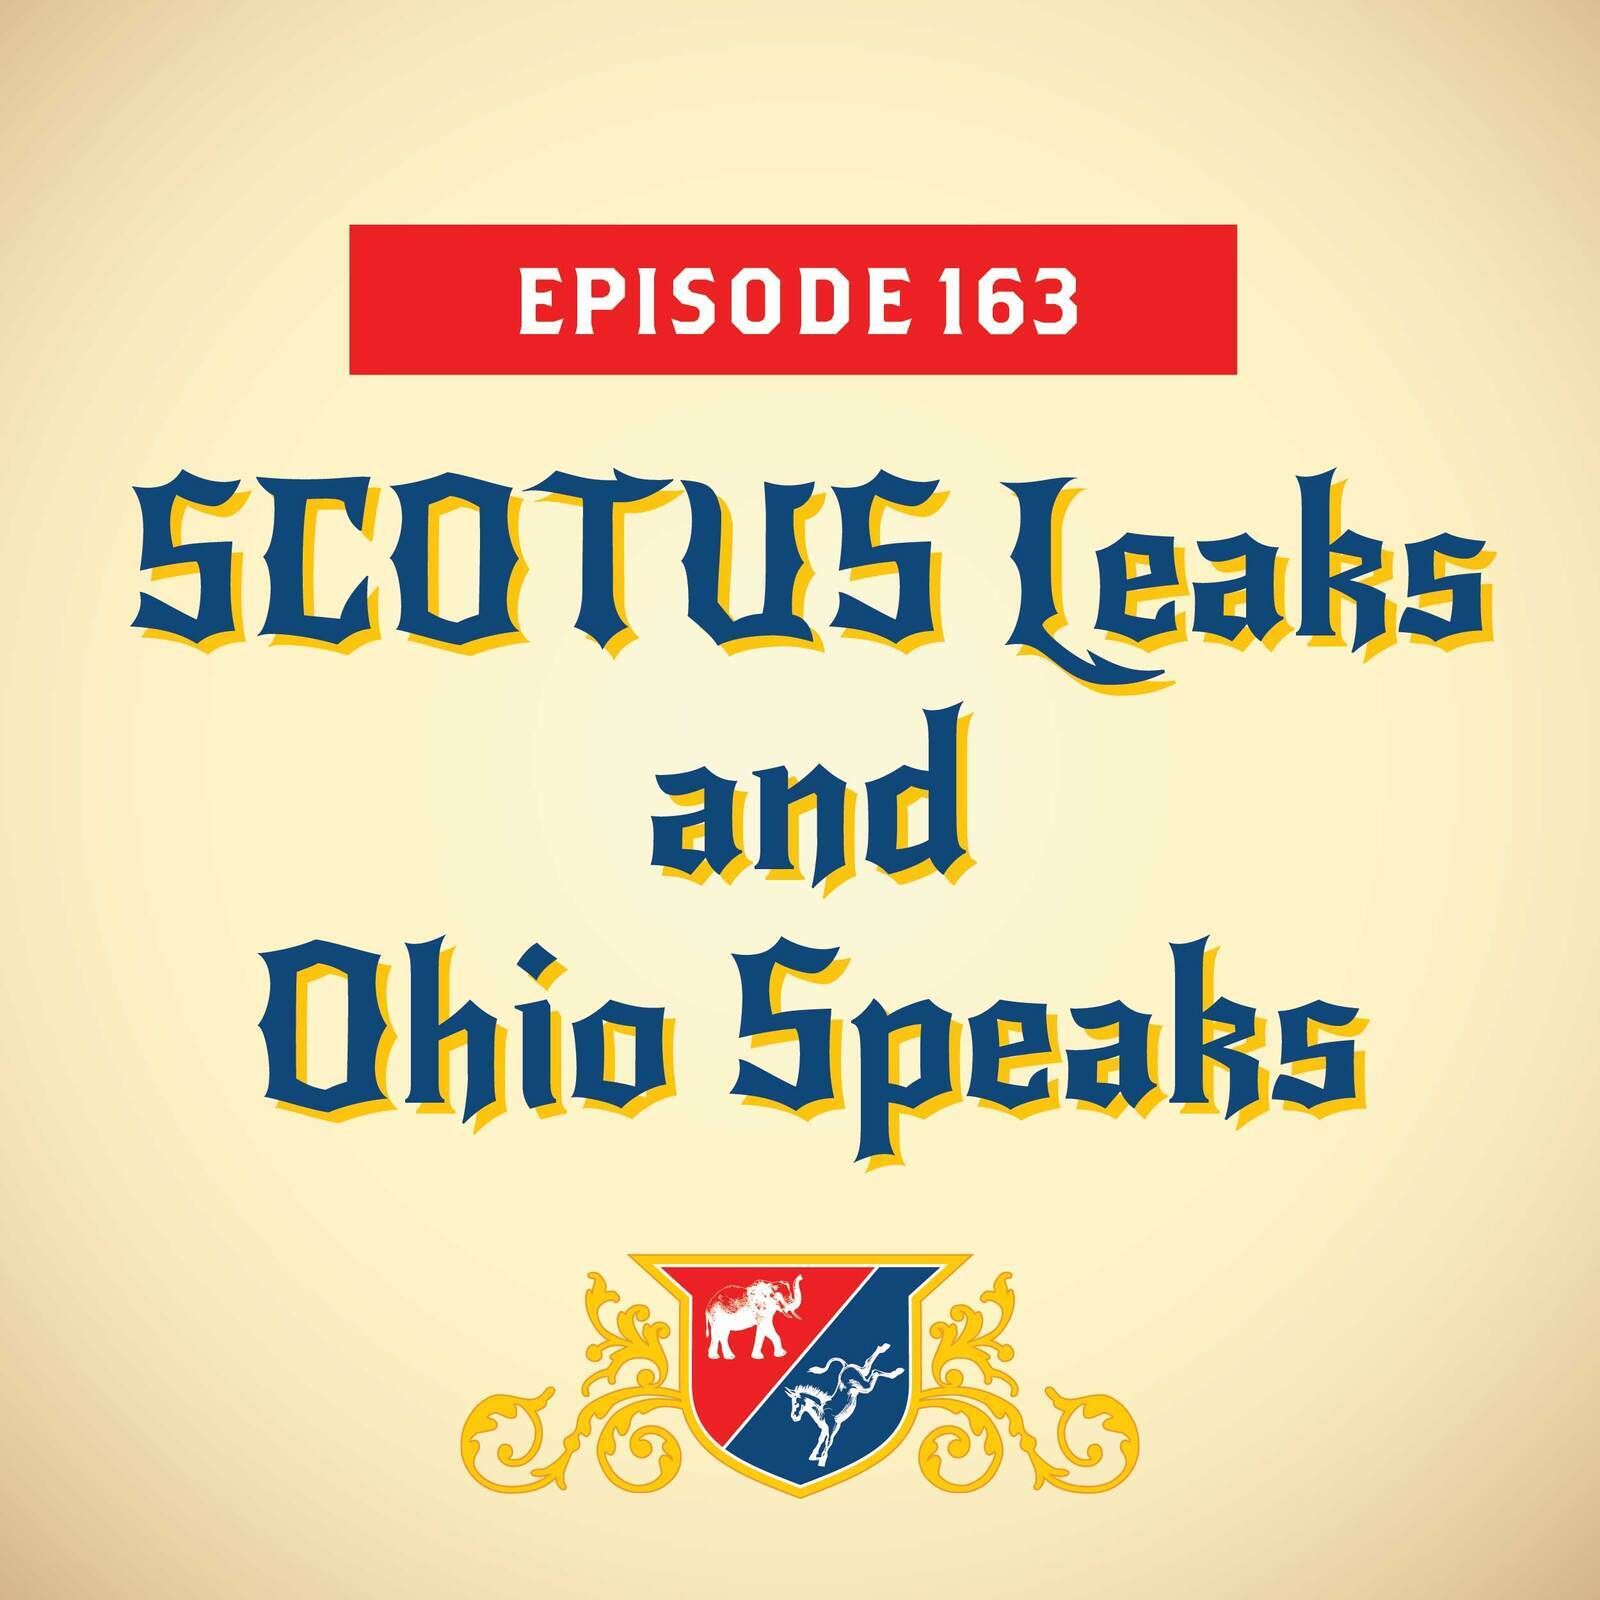 SCOTUS Leaks and Ohio Speaks